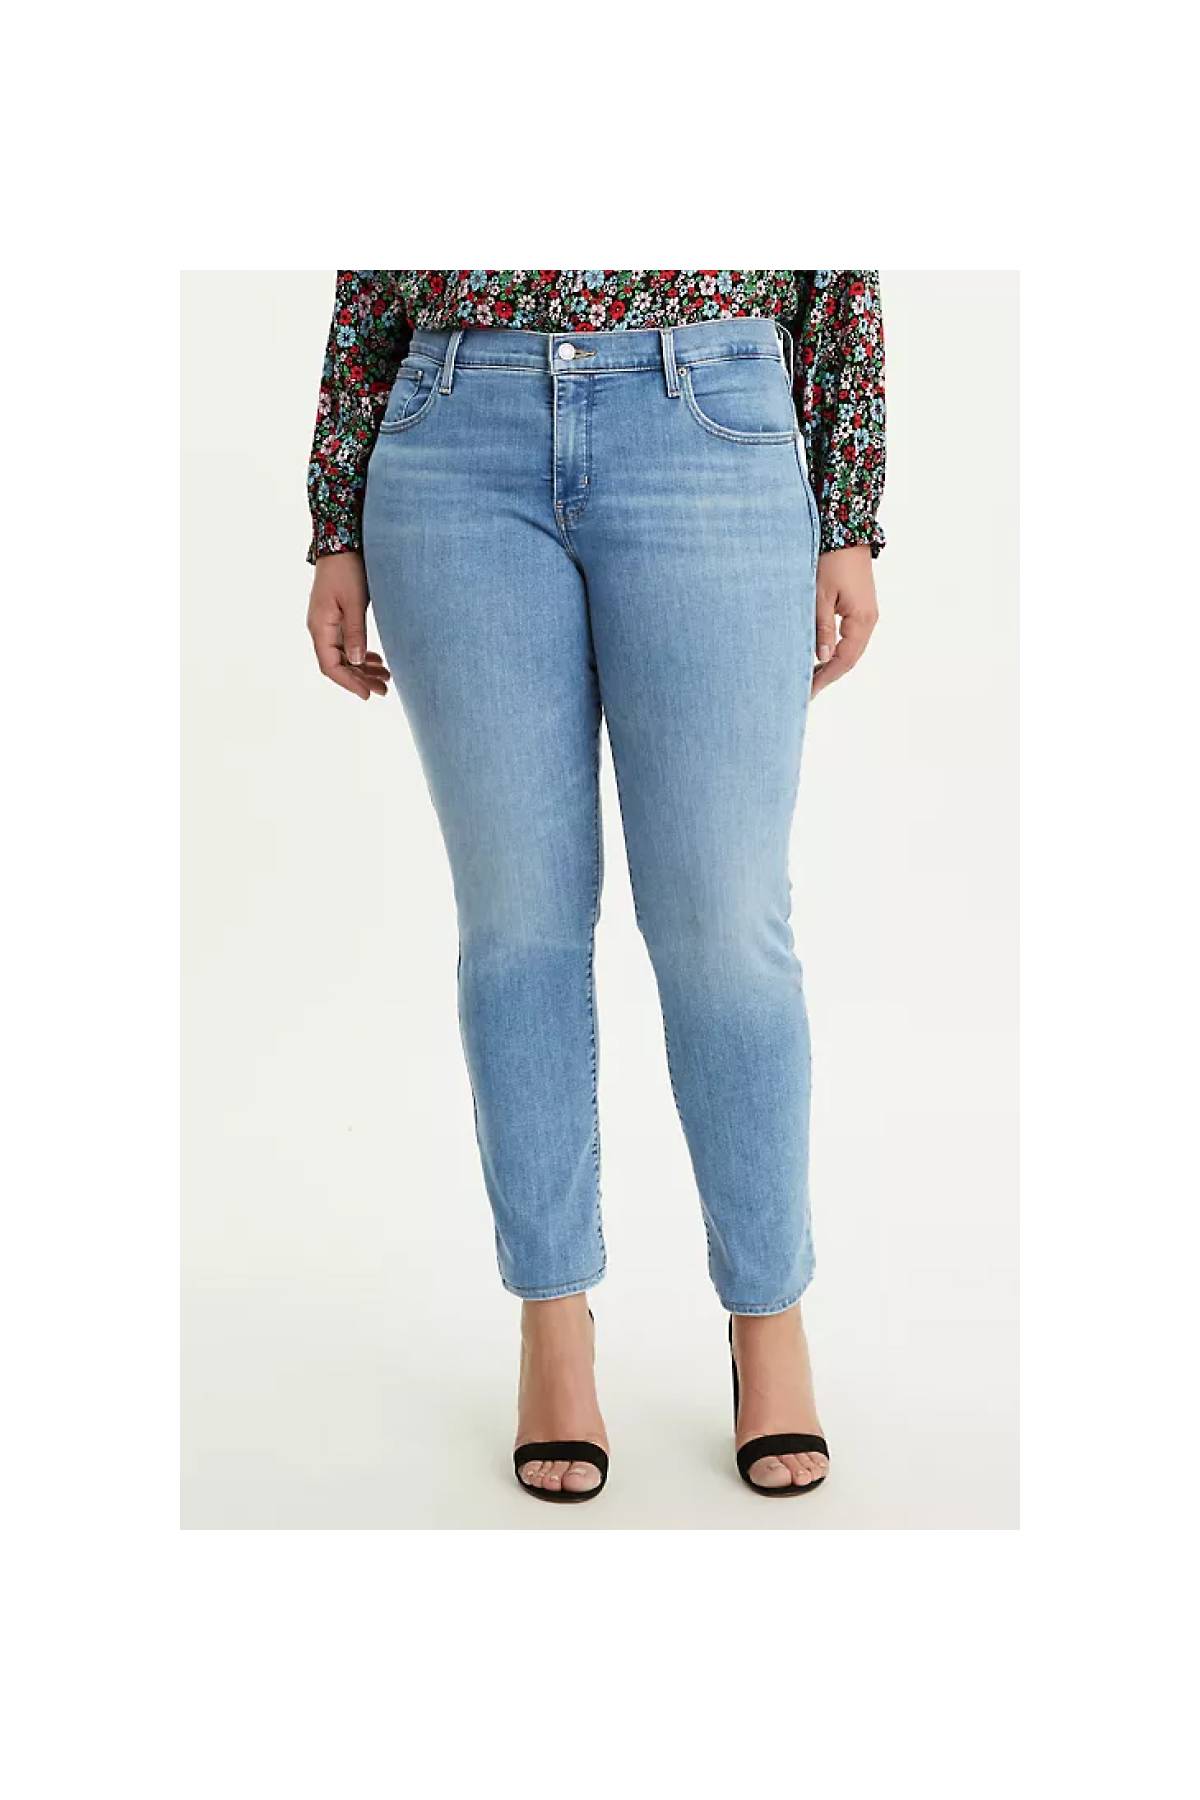 Calça Jeans Levis 414 Classic Straight- Plus Size